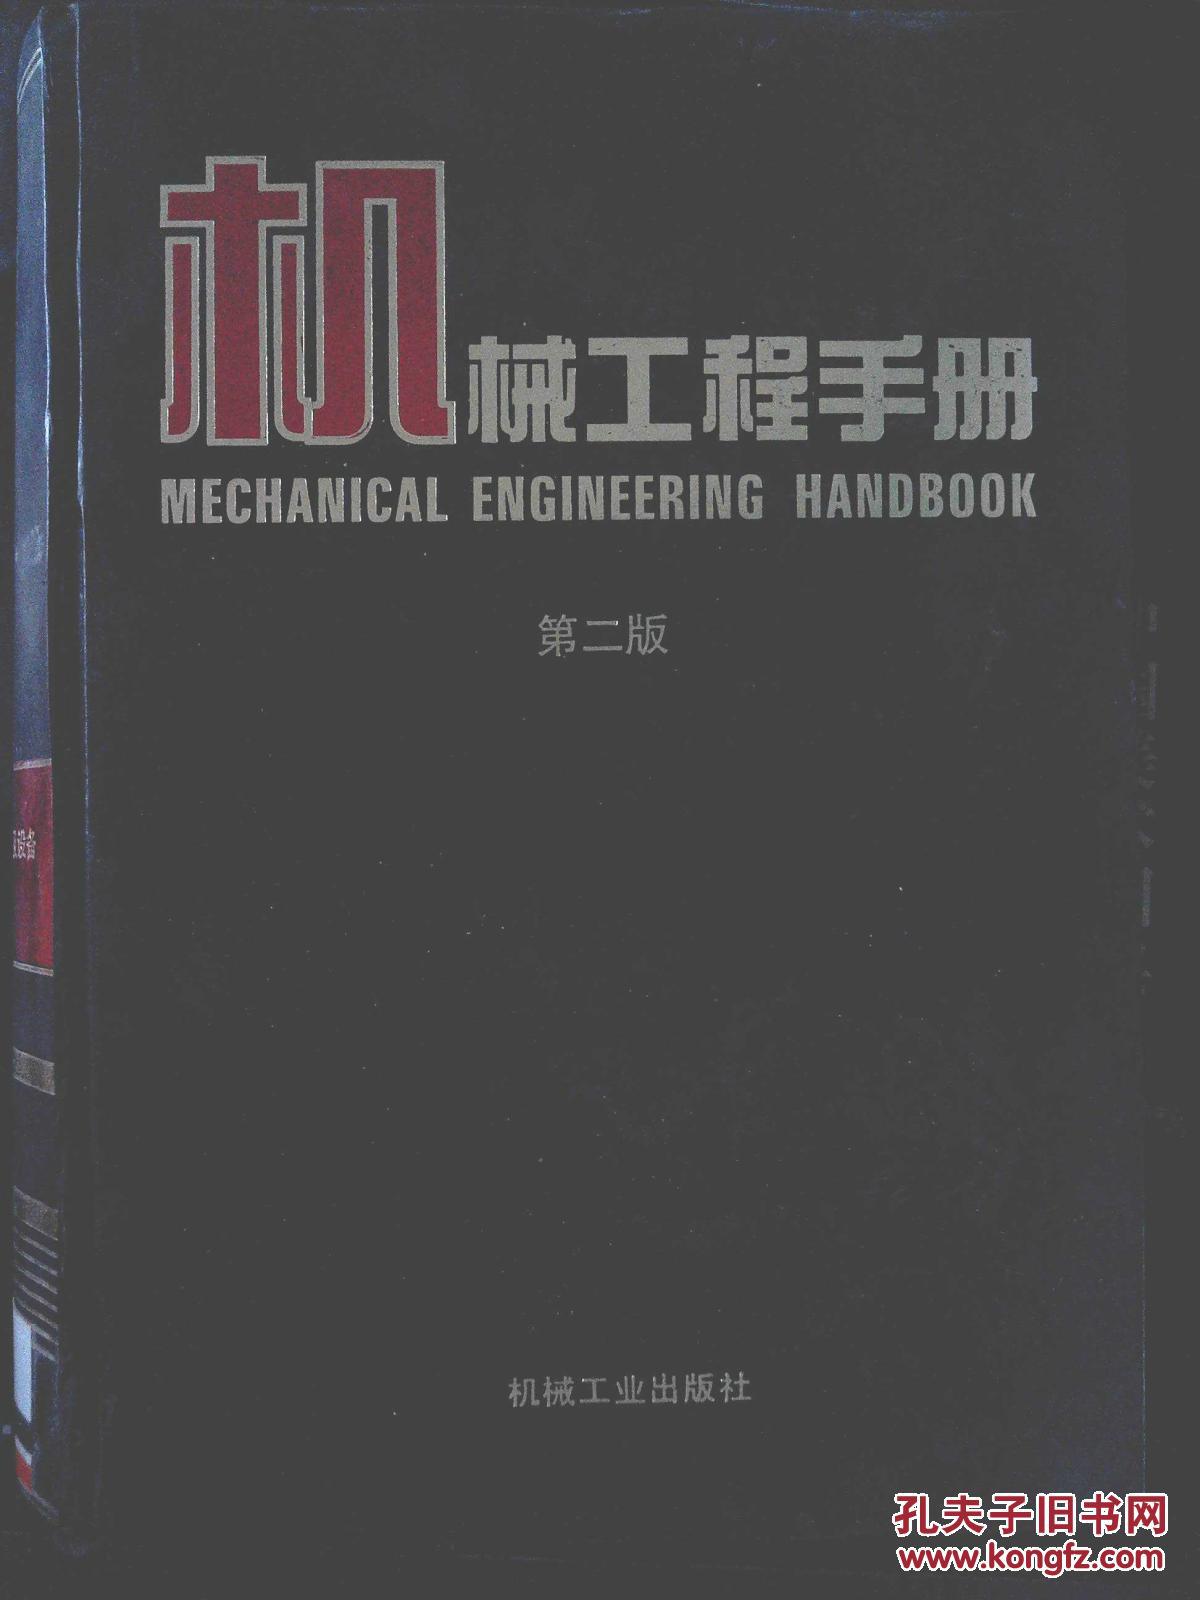 【图】机械工程手册 第二版 7 机械制造工艺及